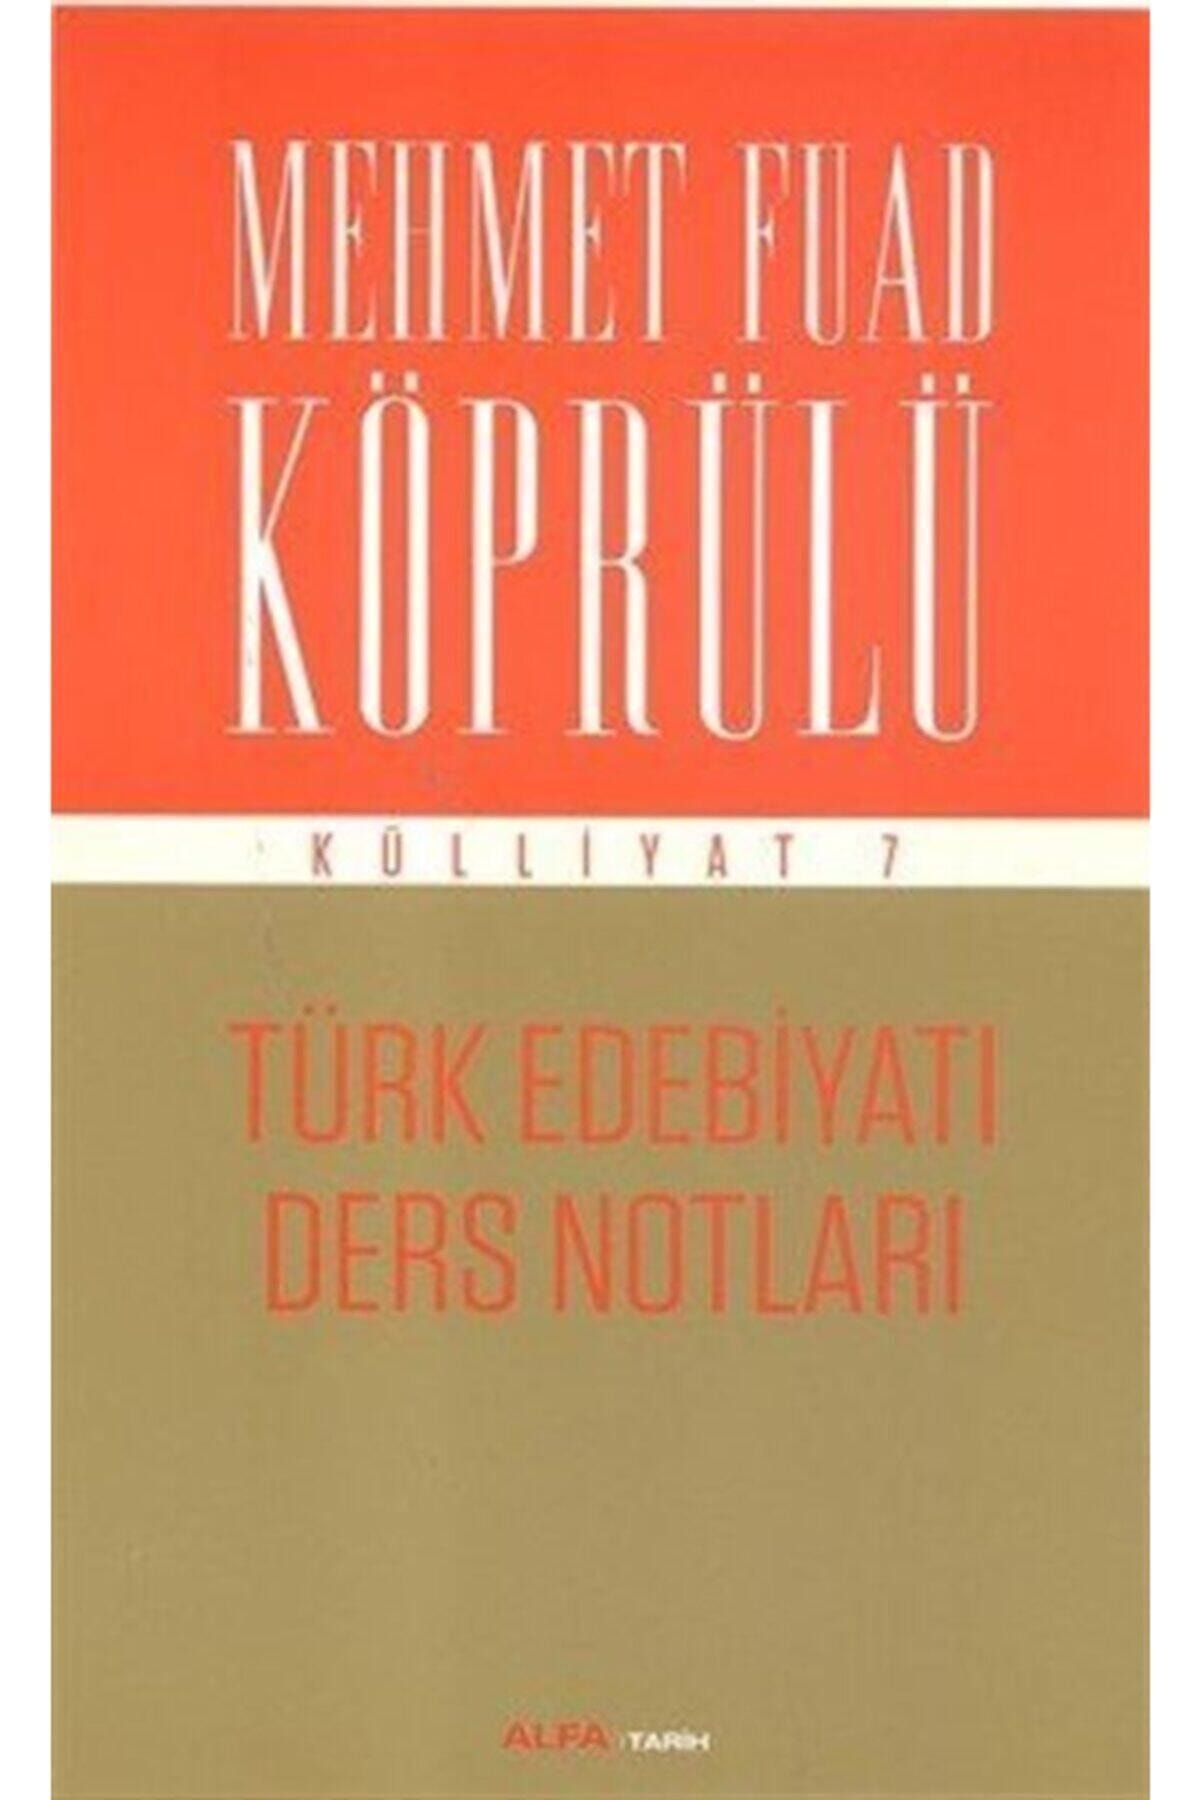 Alfa Yayınları Türk Edebiyatı Ders Notları / Mehmet Fuad Köprülü Külliyat 7